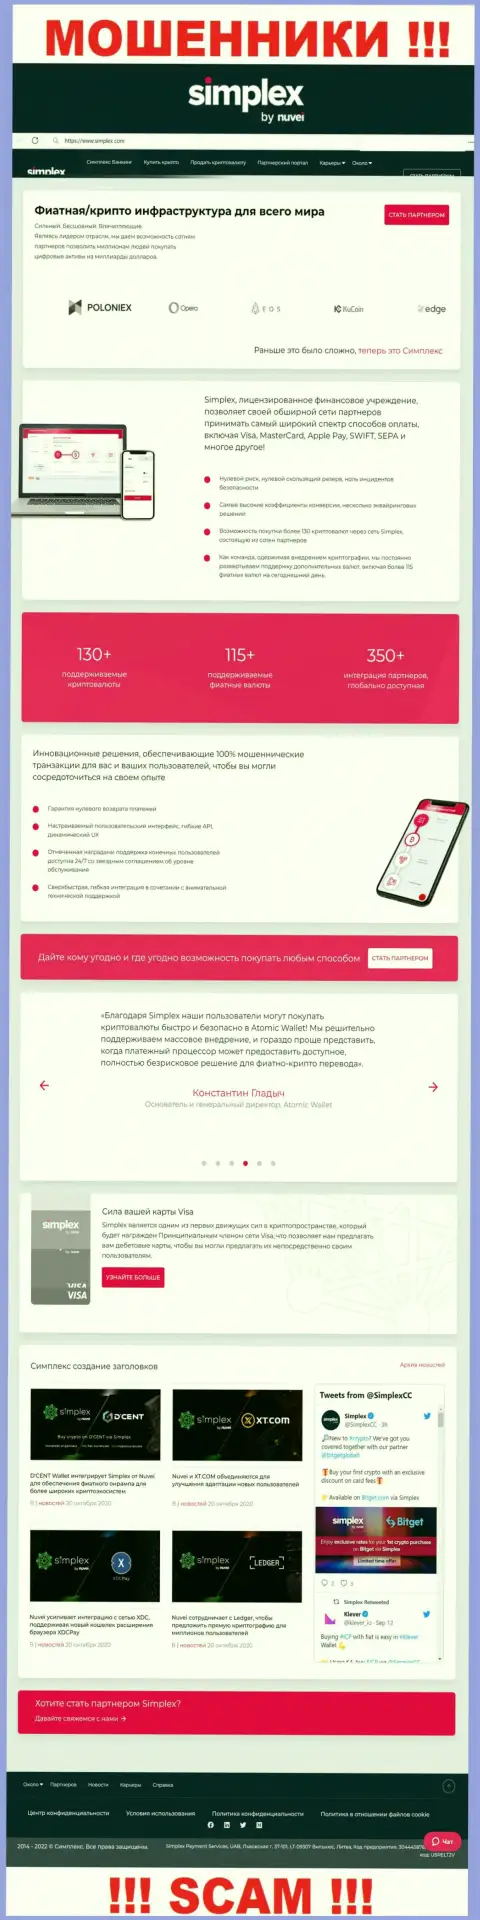 Вид официальной онлайн-страницы противозаконно действующей компании Симплекс Пеймент Сервис Лимитед